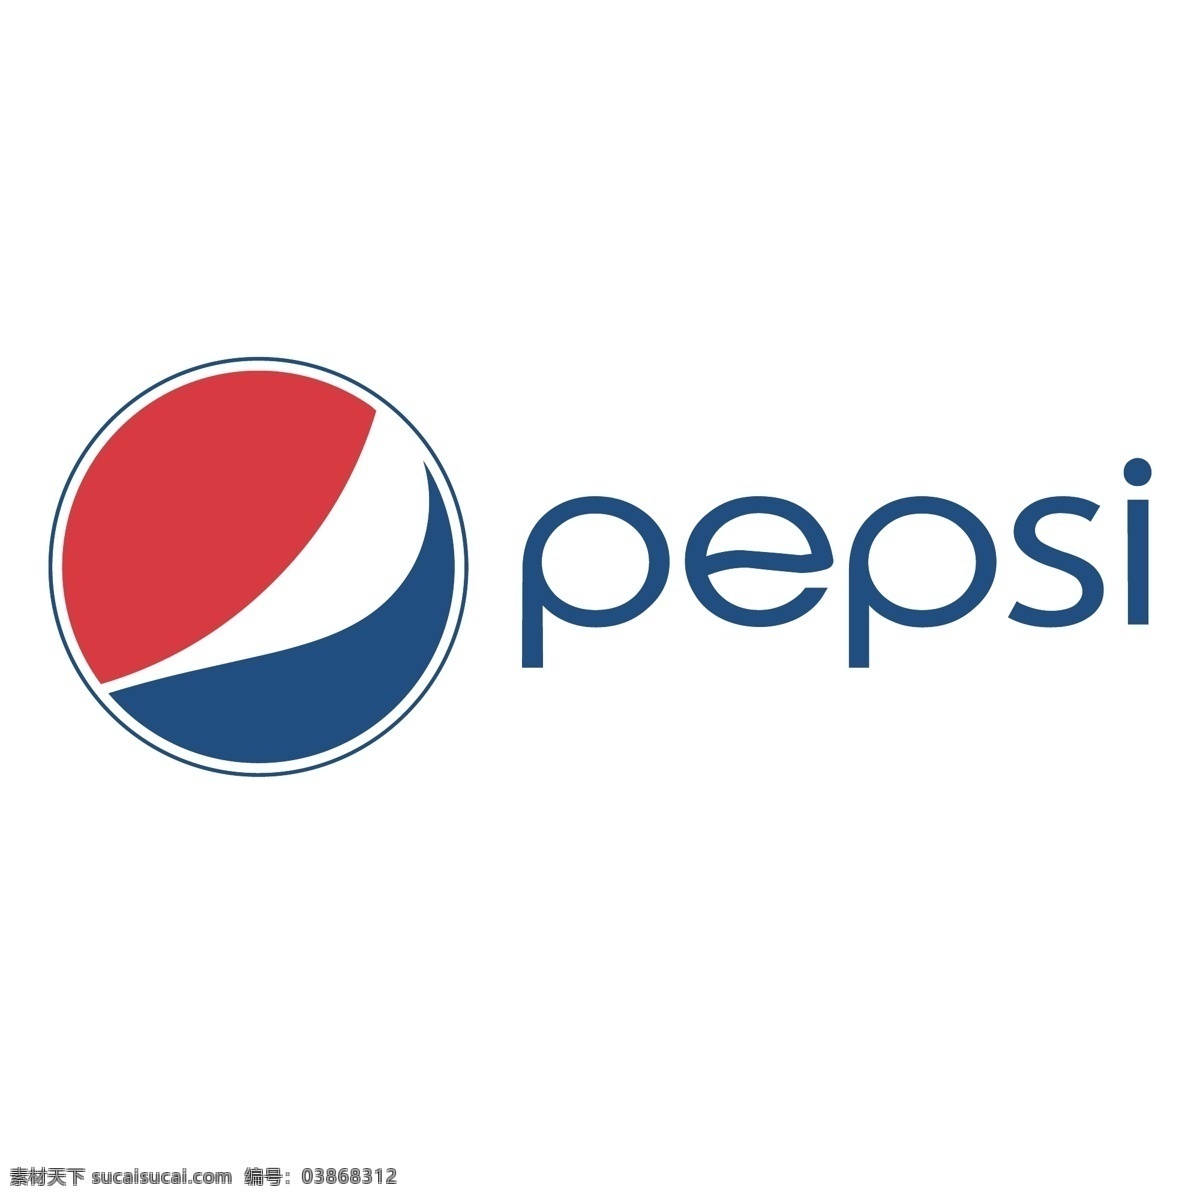 百事可乐 logo 百事可乐图案 百事可乐标志 pepsi pepsilogo 百事 百事logo 标志图标 公共标识标志